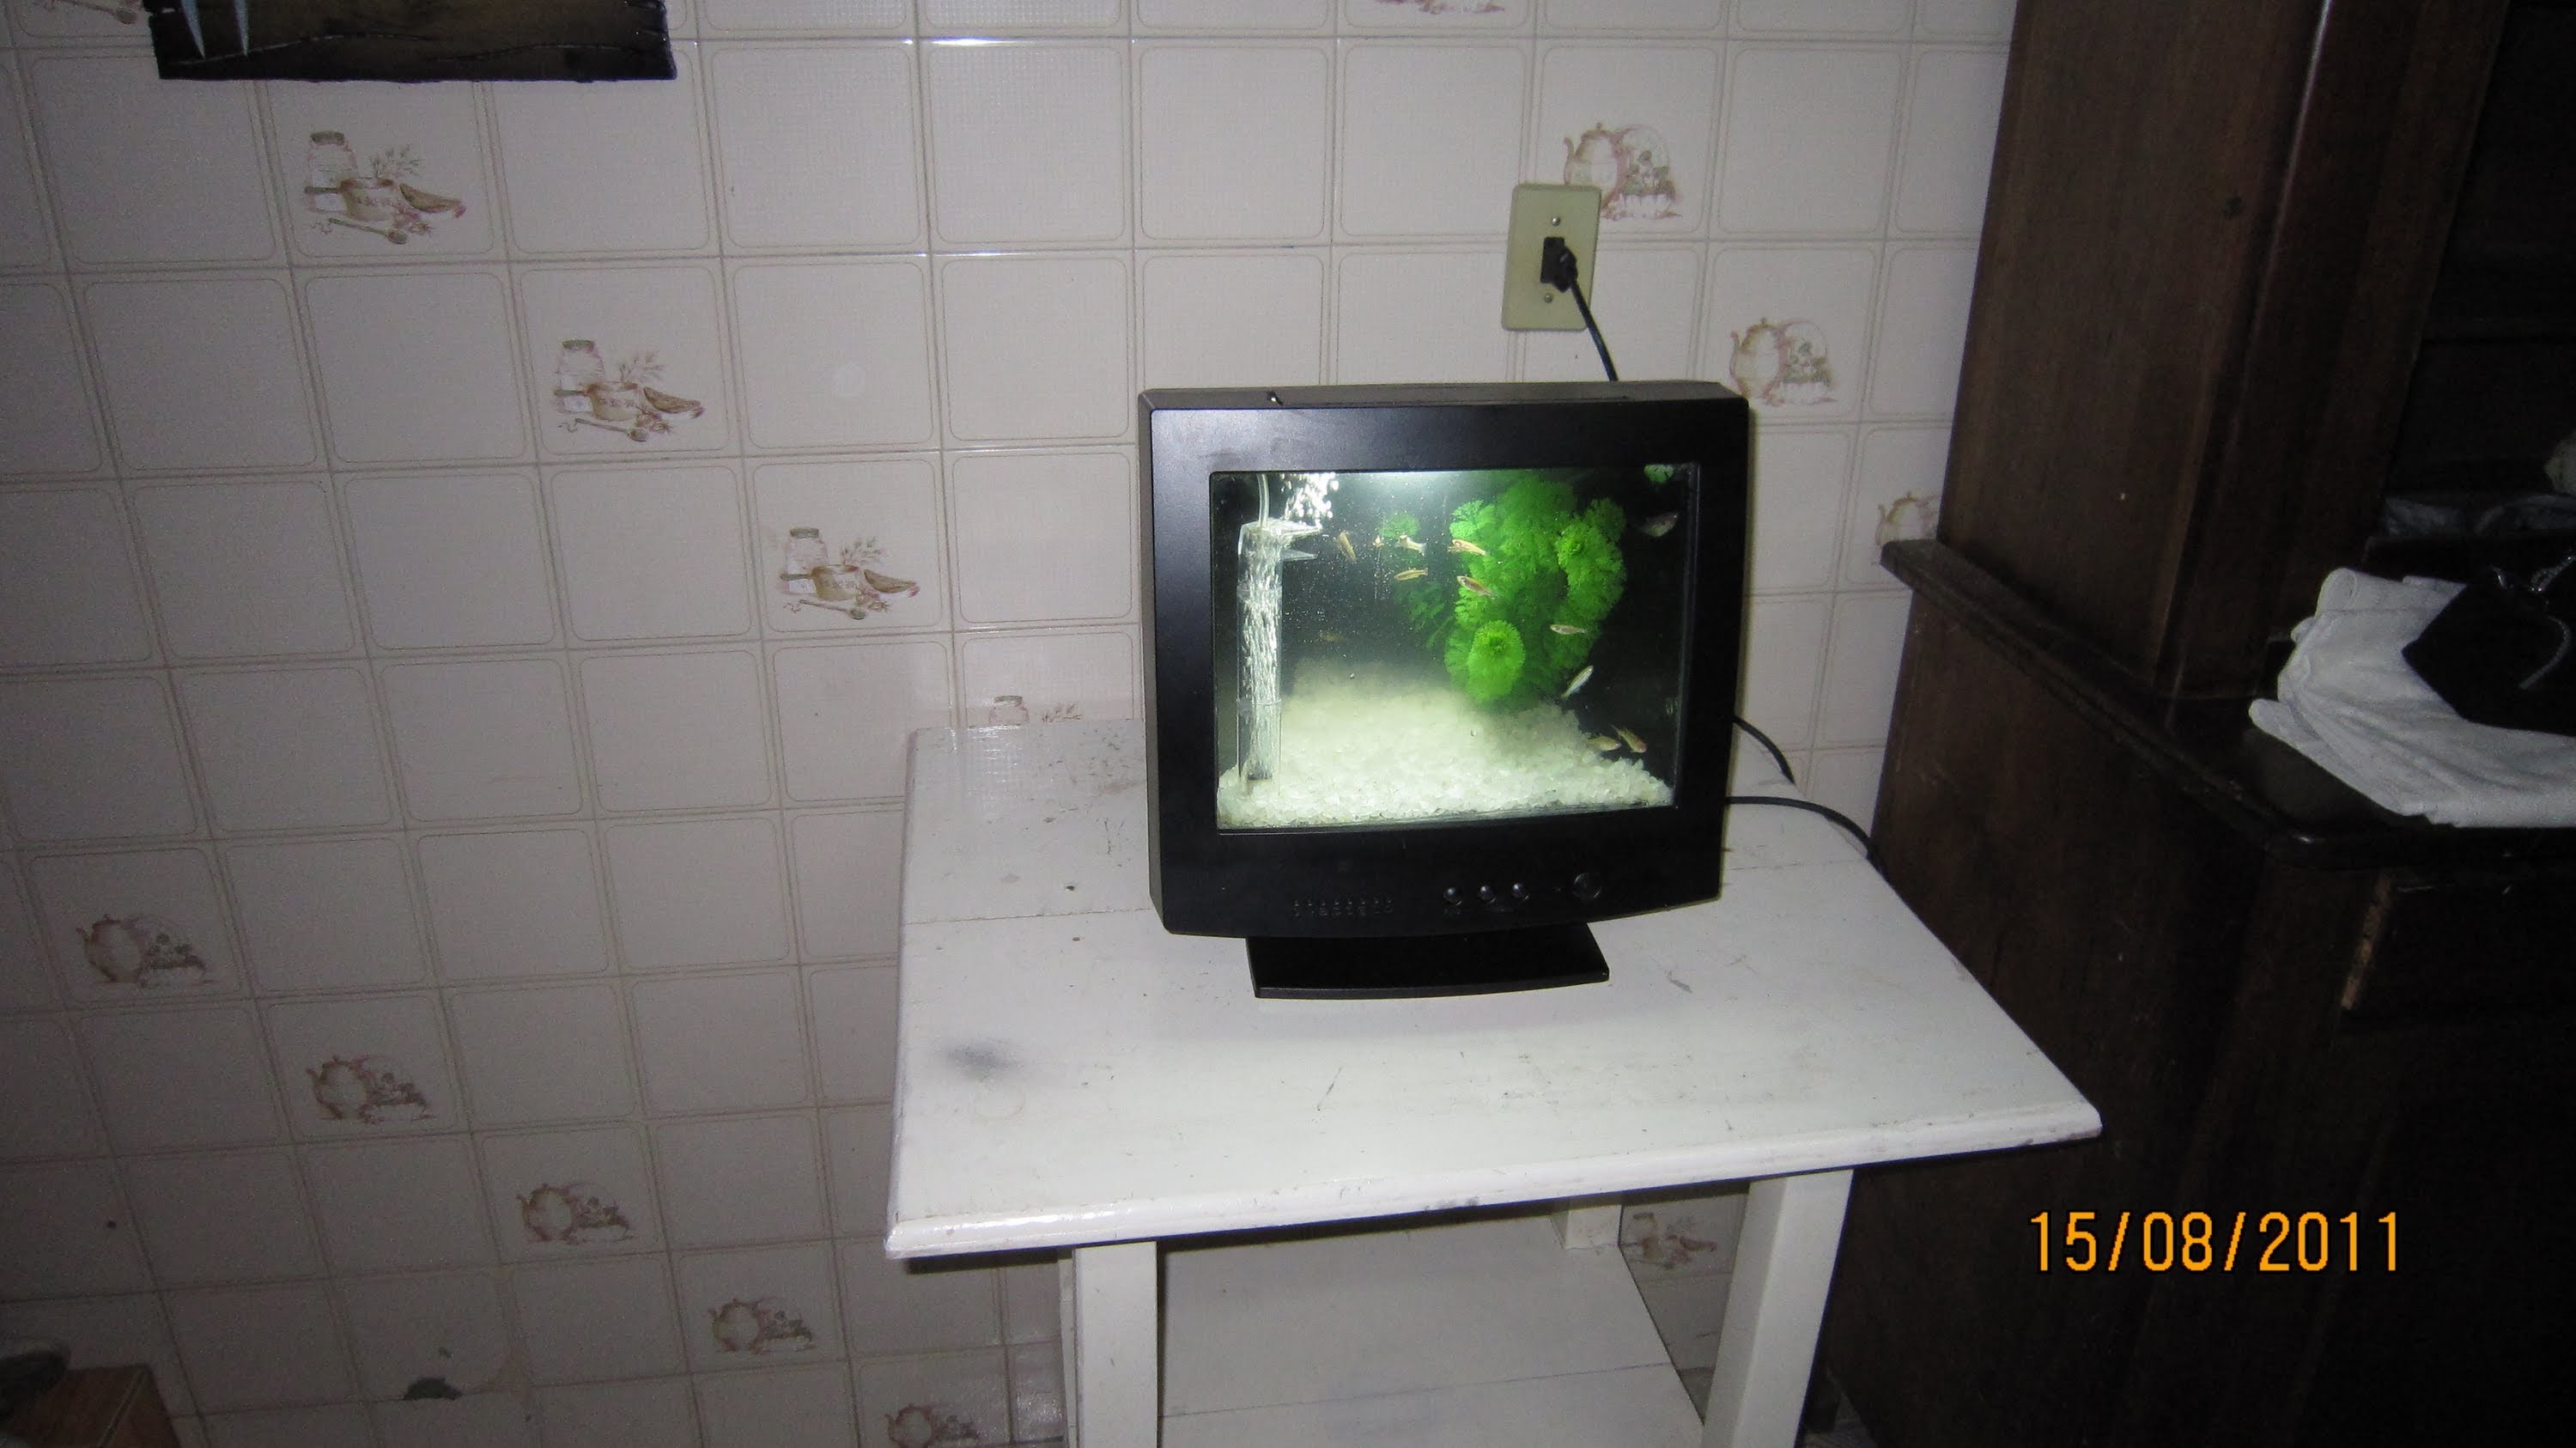 Aquario feito com monitor de computador "TV"